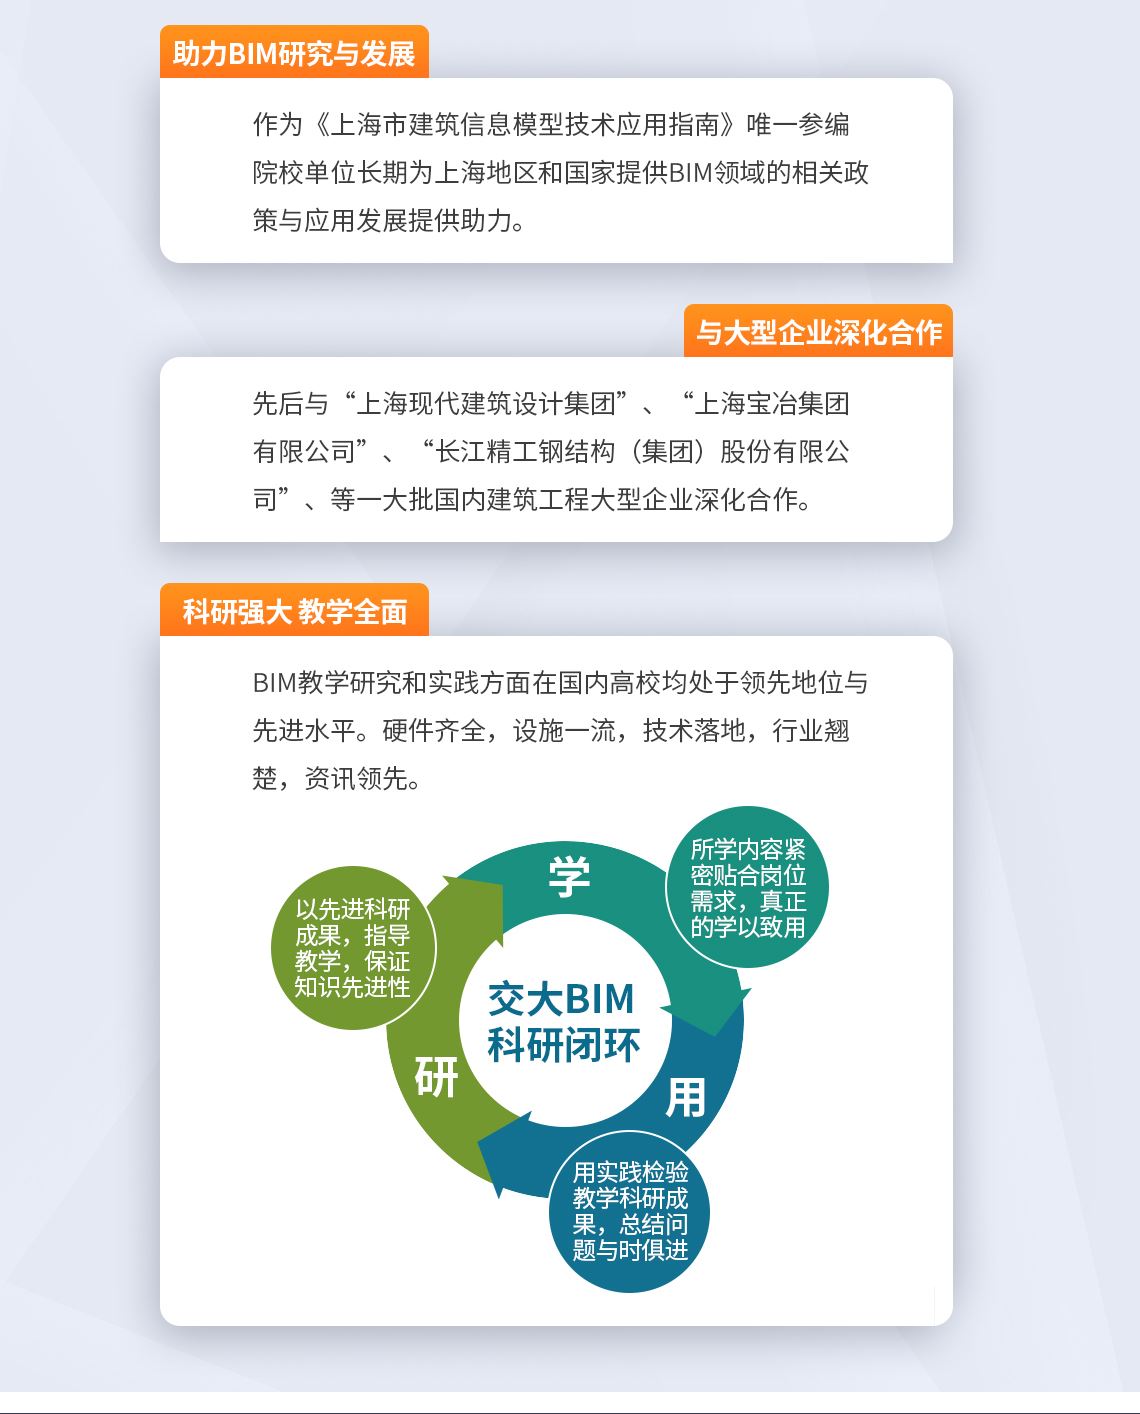 助力BIM研究与发展 做为《上海市建筑信息模型技术应用指南》唯一参编院校单位长期为上海地区和国家提供BIM领域的相关政策与应用发展提供助力。 与大型企业深化合作 先后与上海现代建筑设计集团、上海宝冶集团有限公司、长江精工钢结构（集团）股份有限公司等一大批国内建筑工程大型企业深化合作。 科研强大 教学全面 BIM教学研究和实践方面在国内高校均处于领先地位和先进水平。硬件齐全，设施一流，技术落地，行业翘楚，资讯领先。